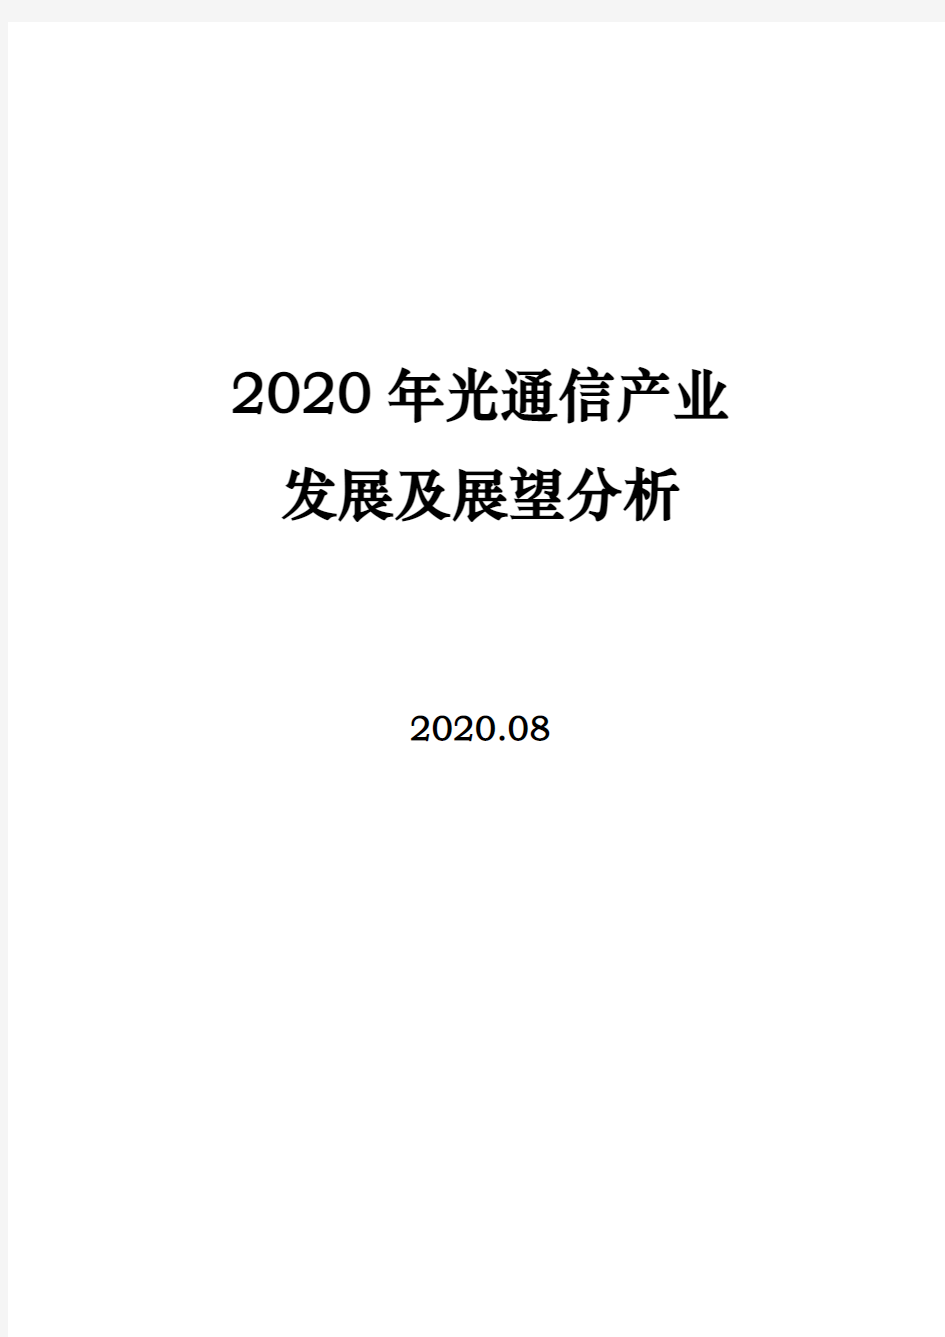 2020年光通信产业发展及展望分析